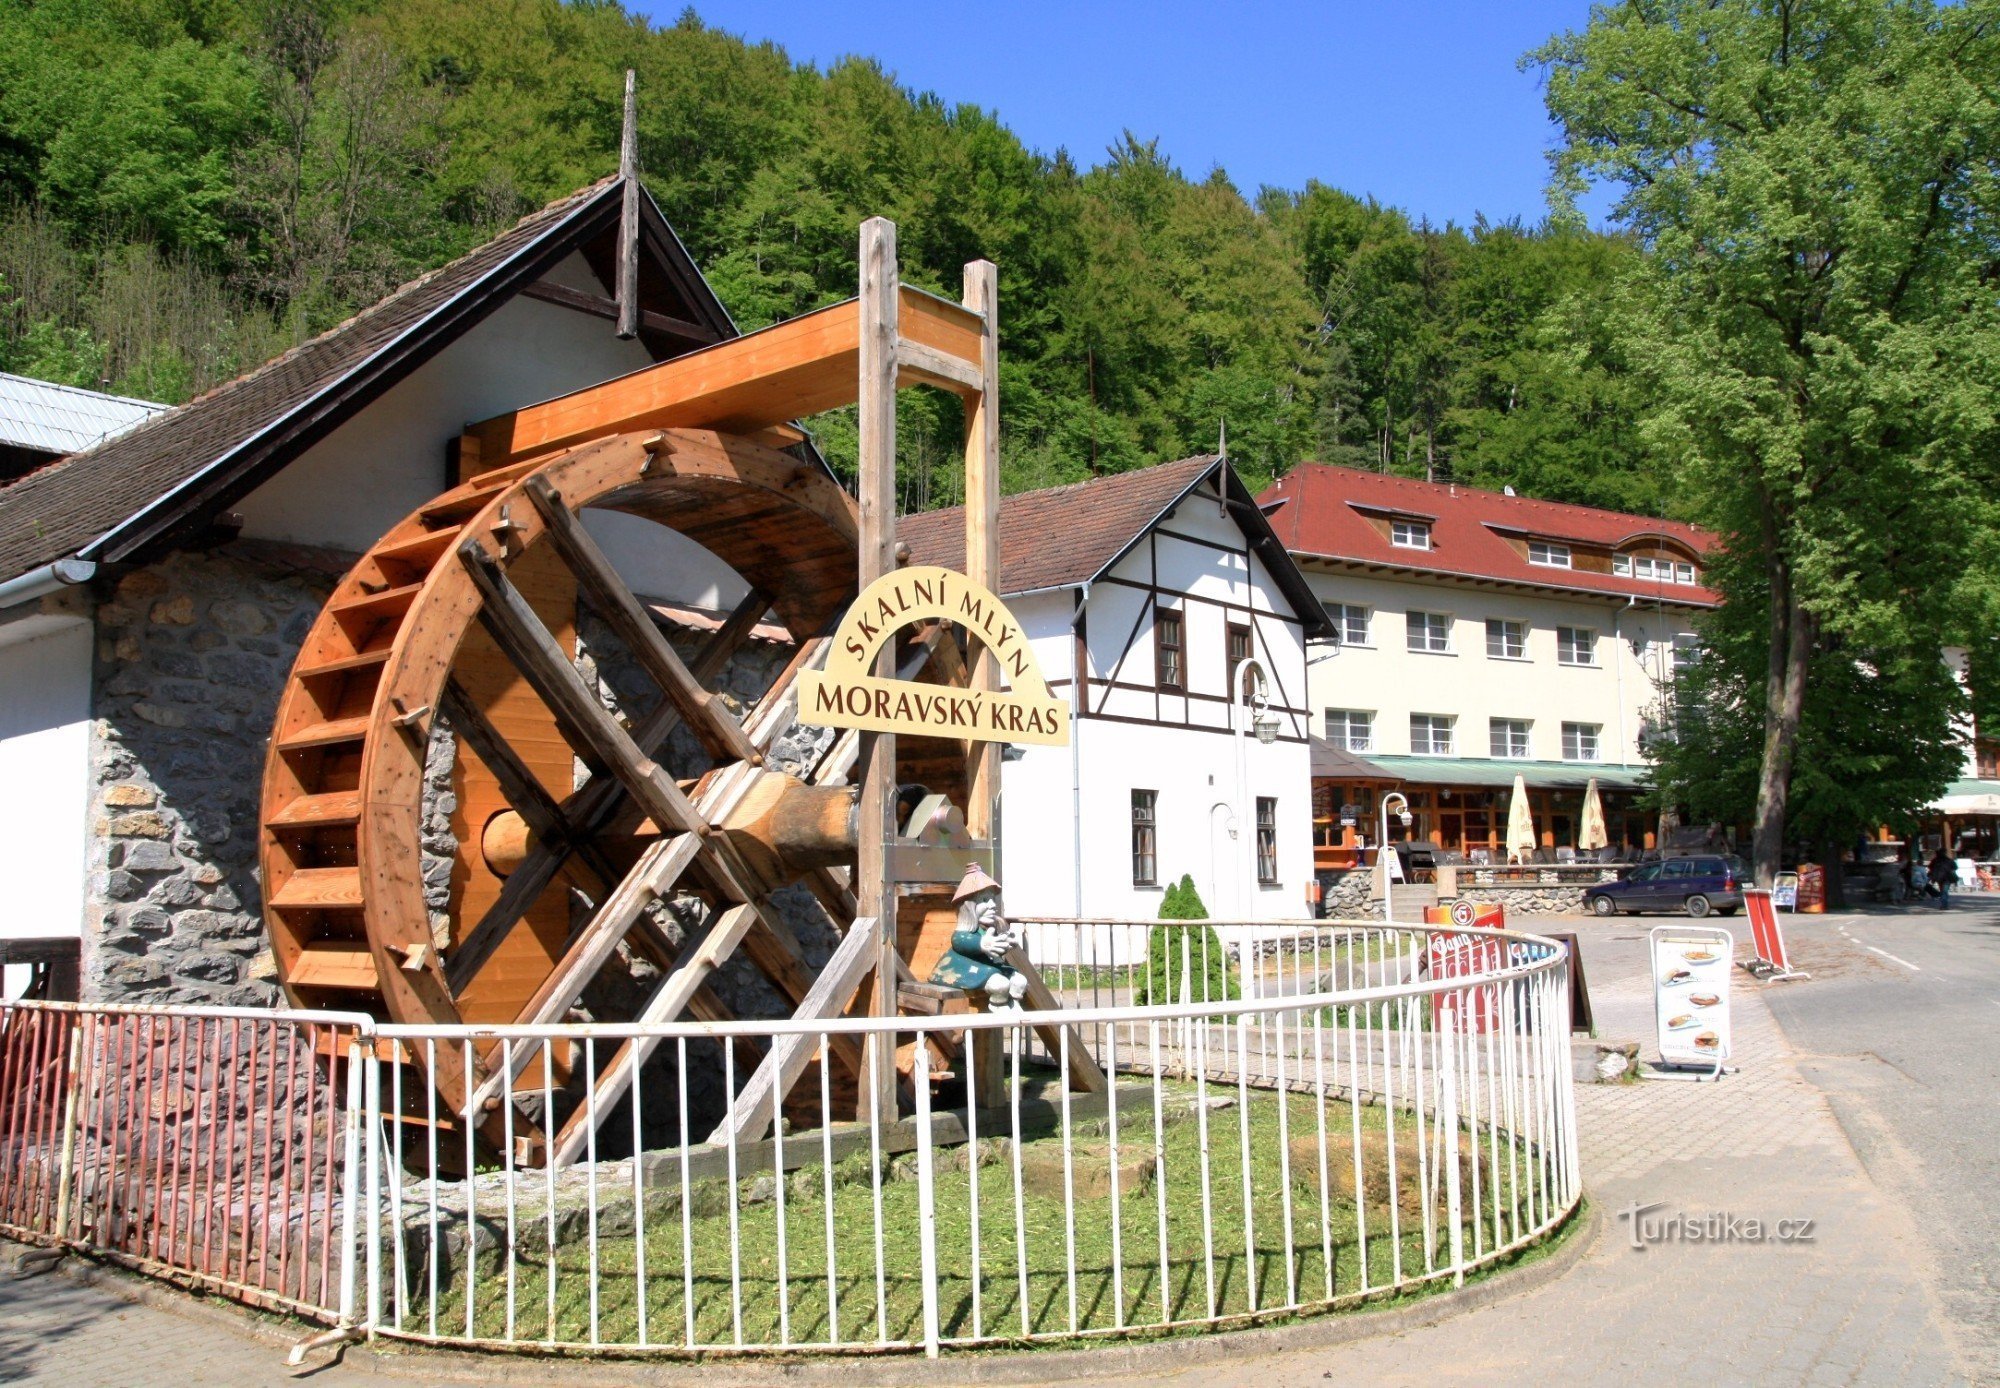 Skalní Mlýn - entrance part with a mill wheel